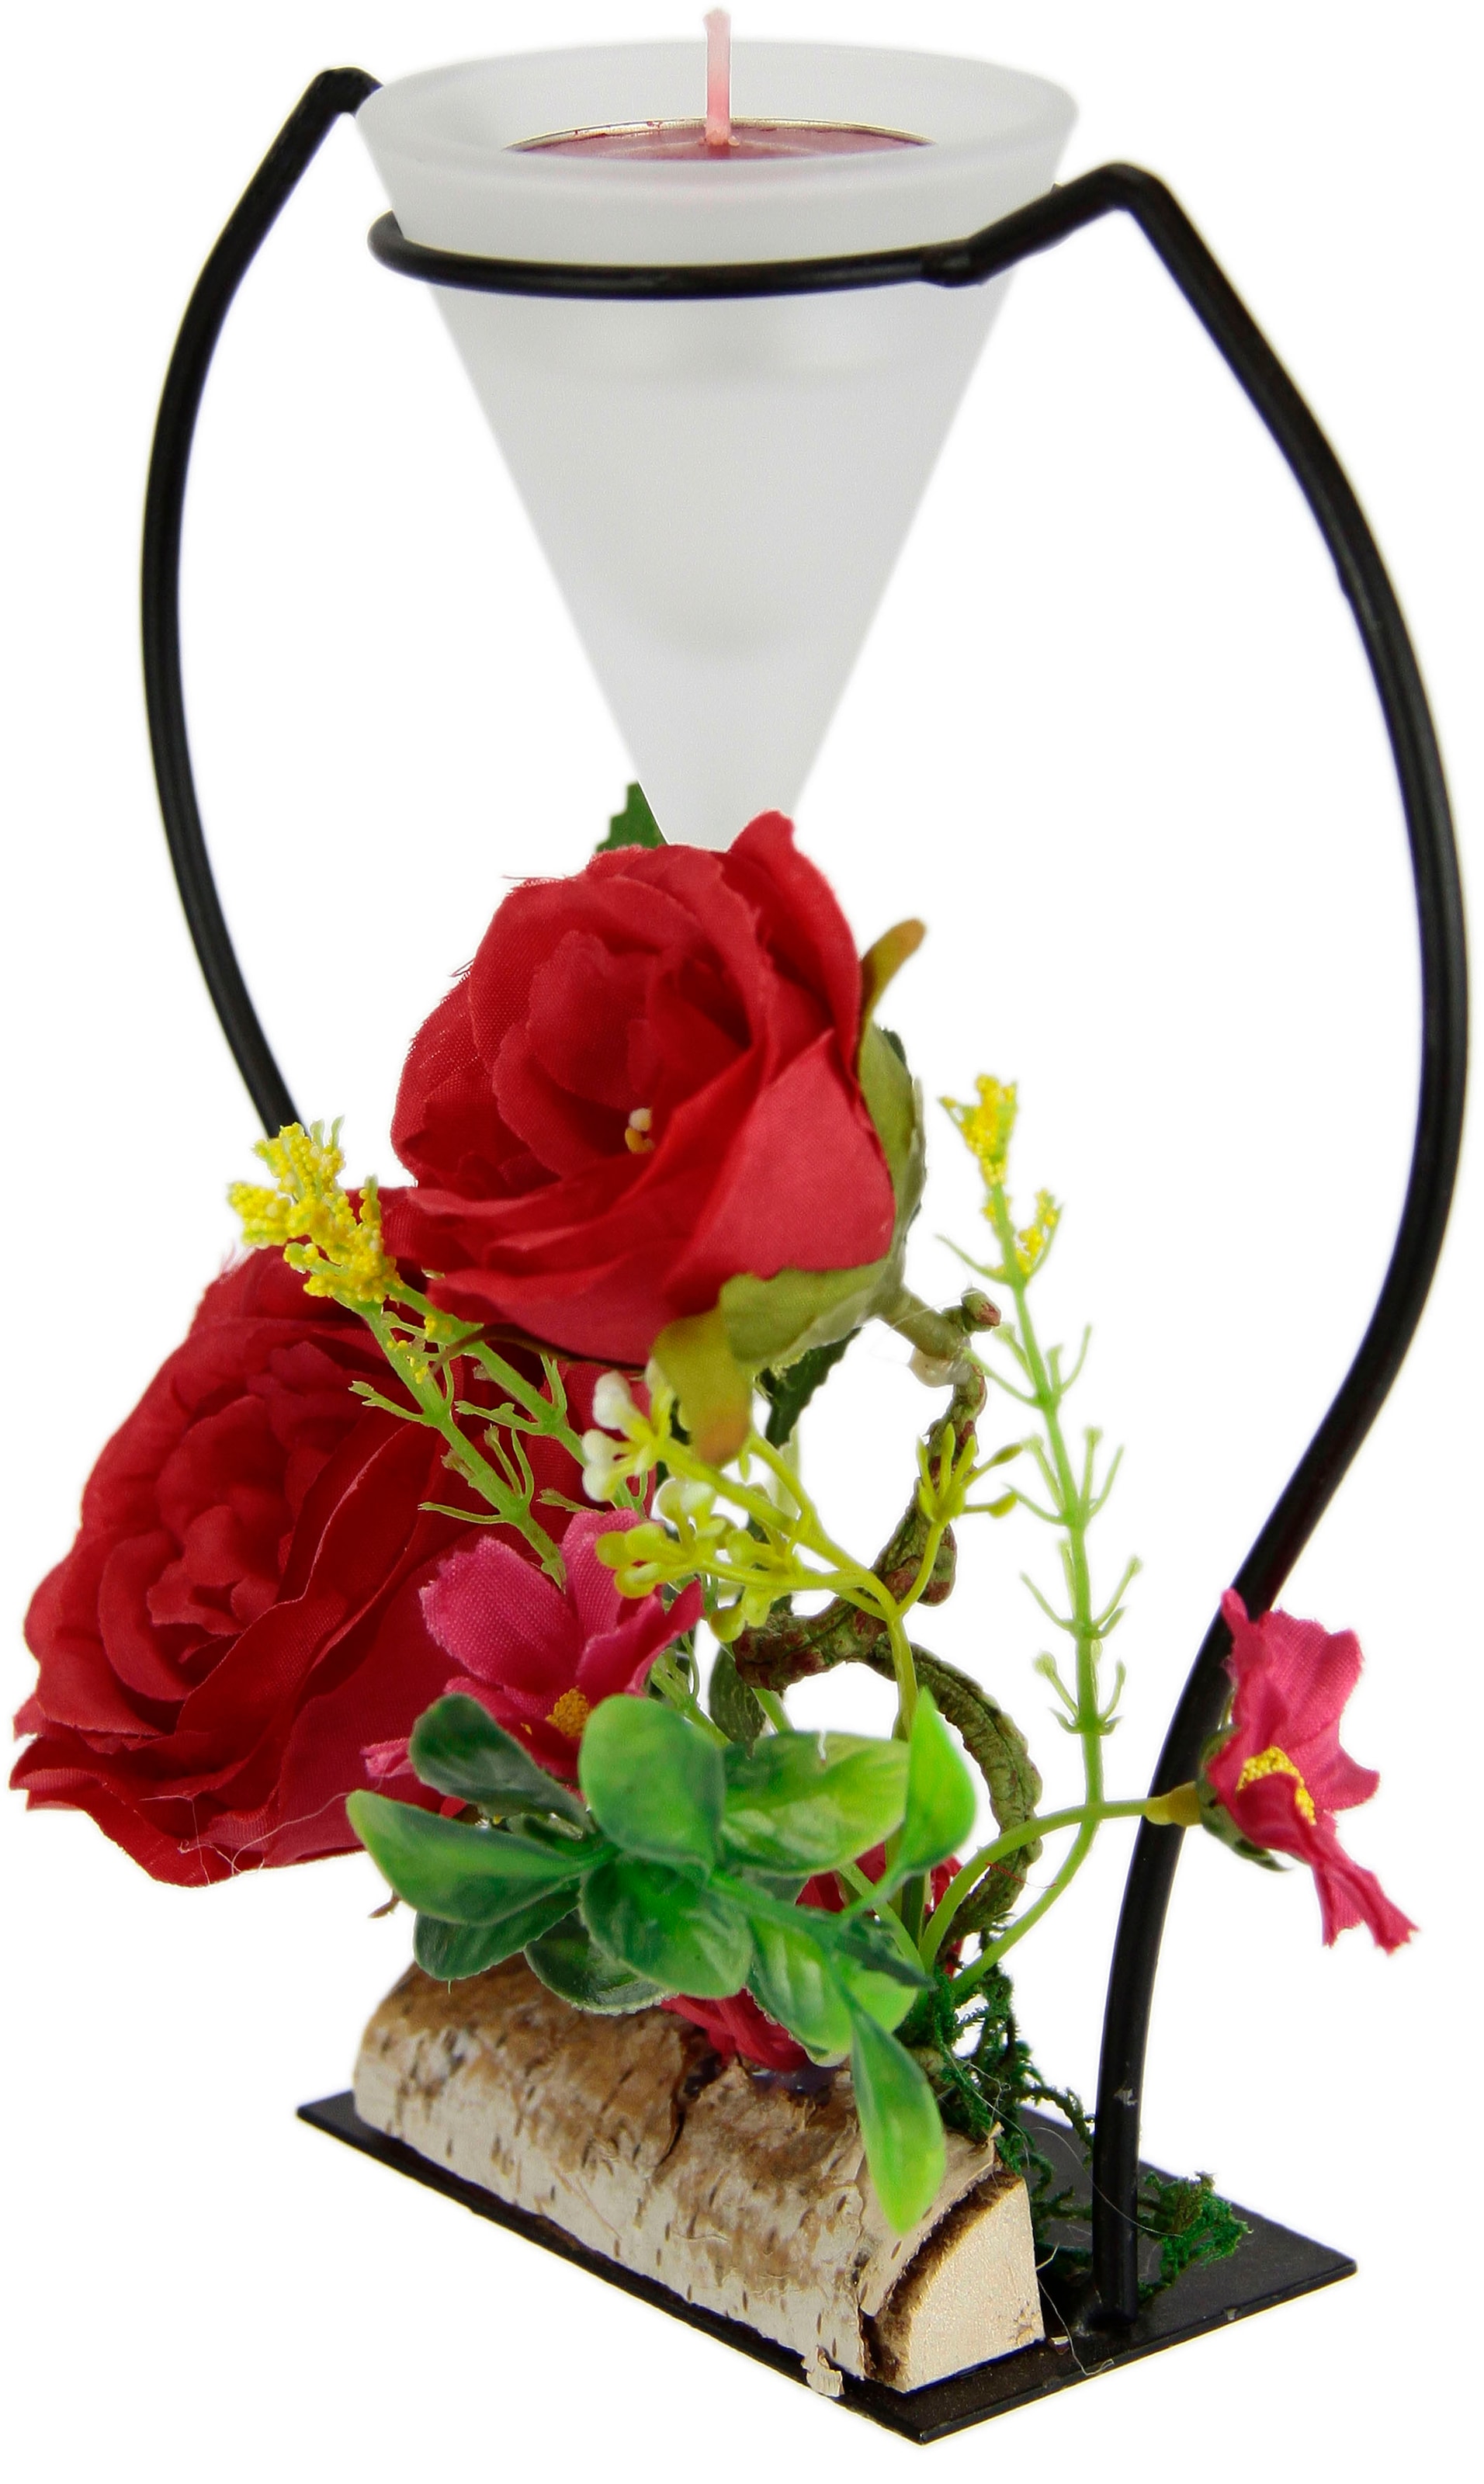 I.GE.A. Teelichthalter Glaseinsatz Rechnung 3D Advent Kerzenständer Teelichtkerze Metall kaufen »Rose«, Kunstblumen auf